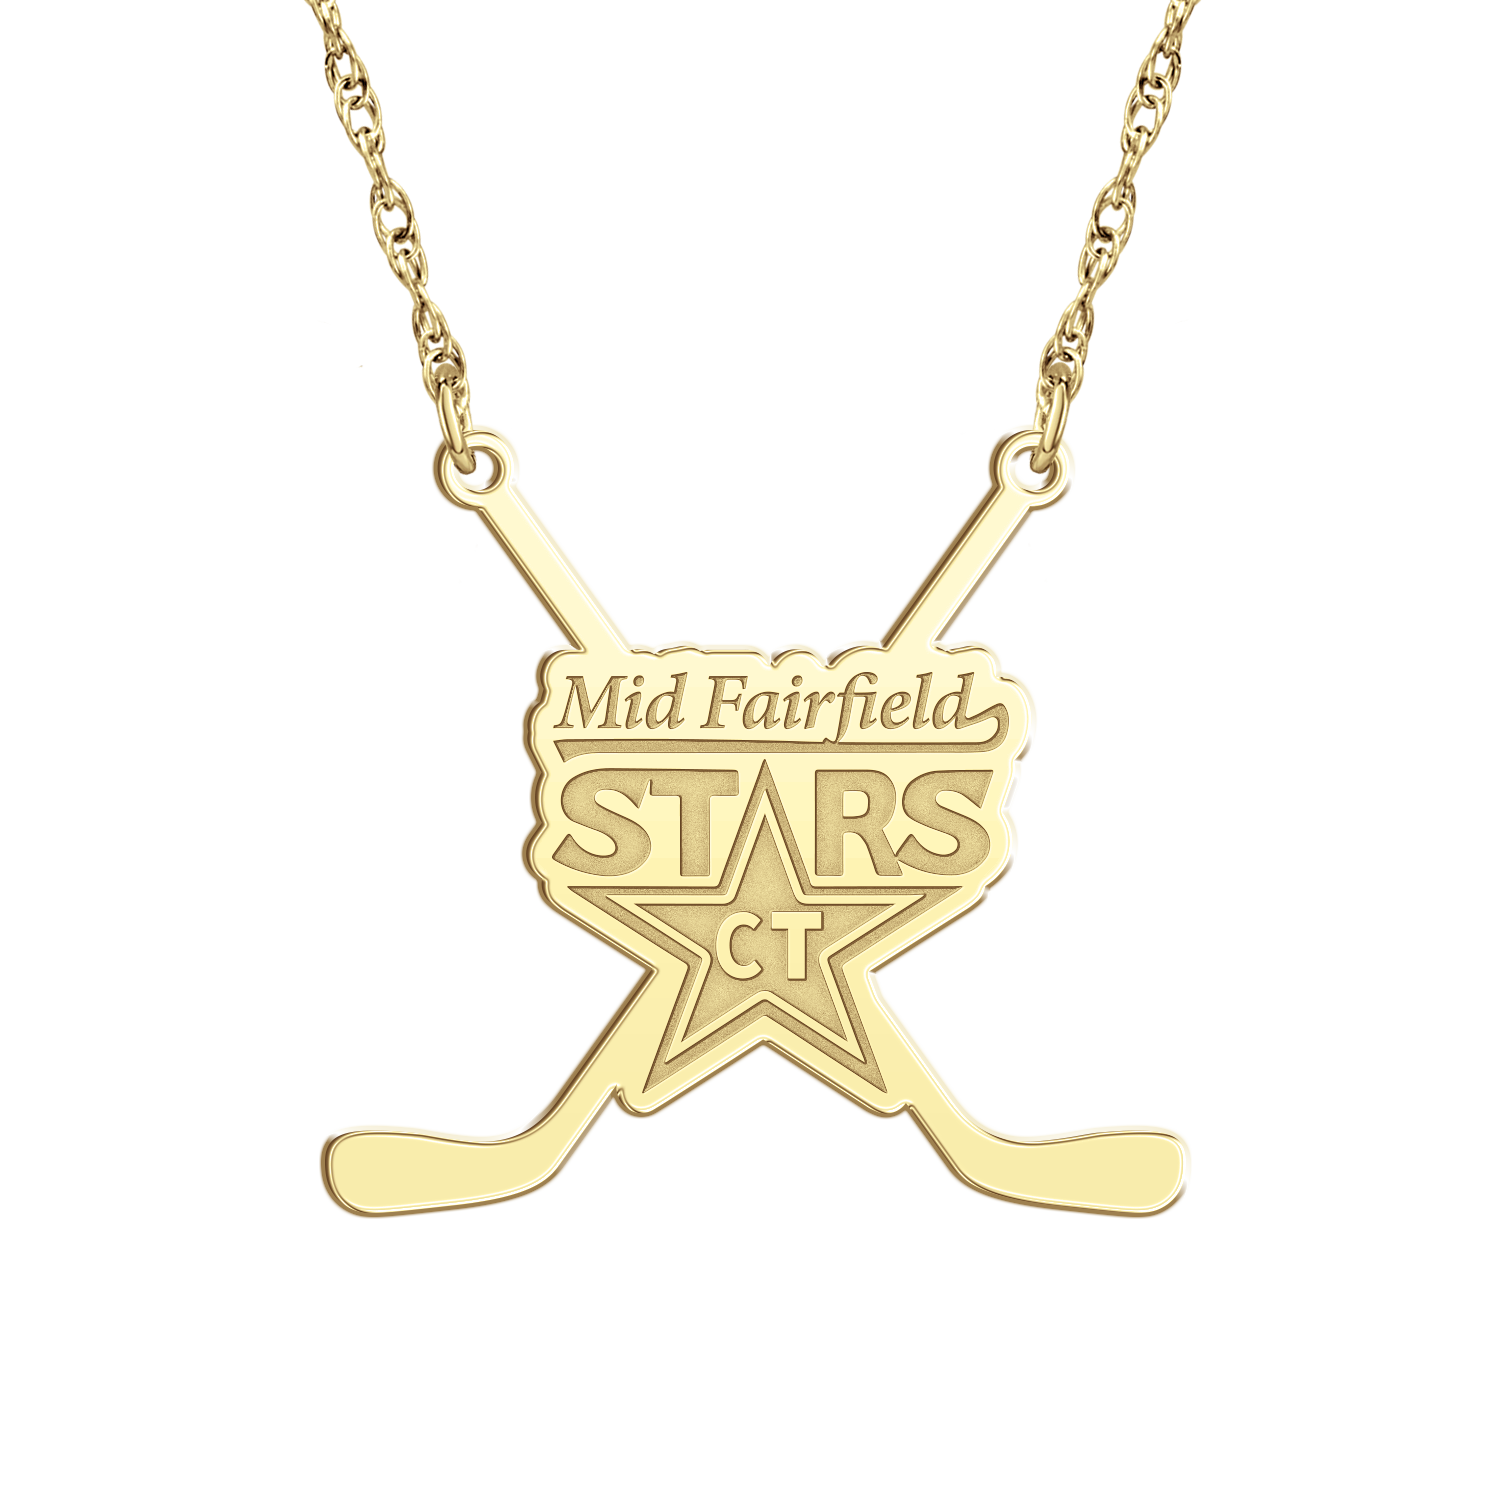 Mid Fairfield Stars Sticks Necklace